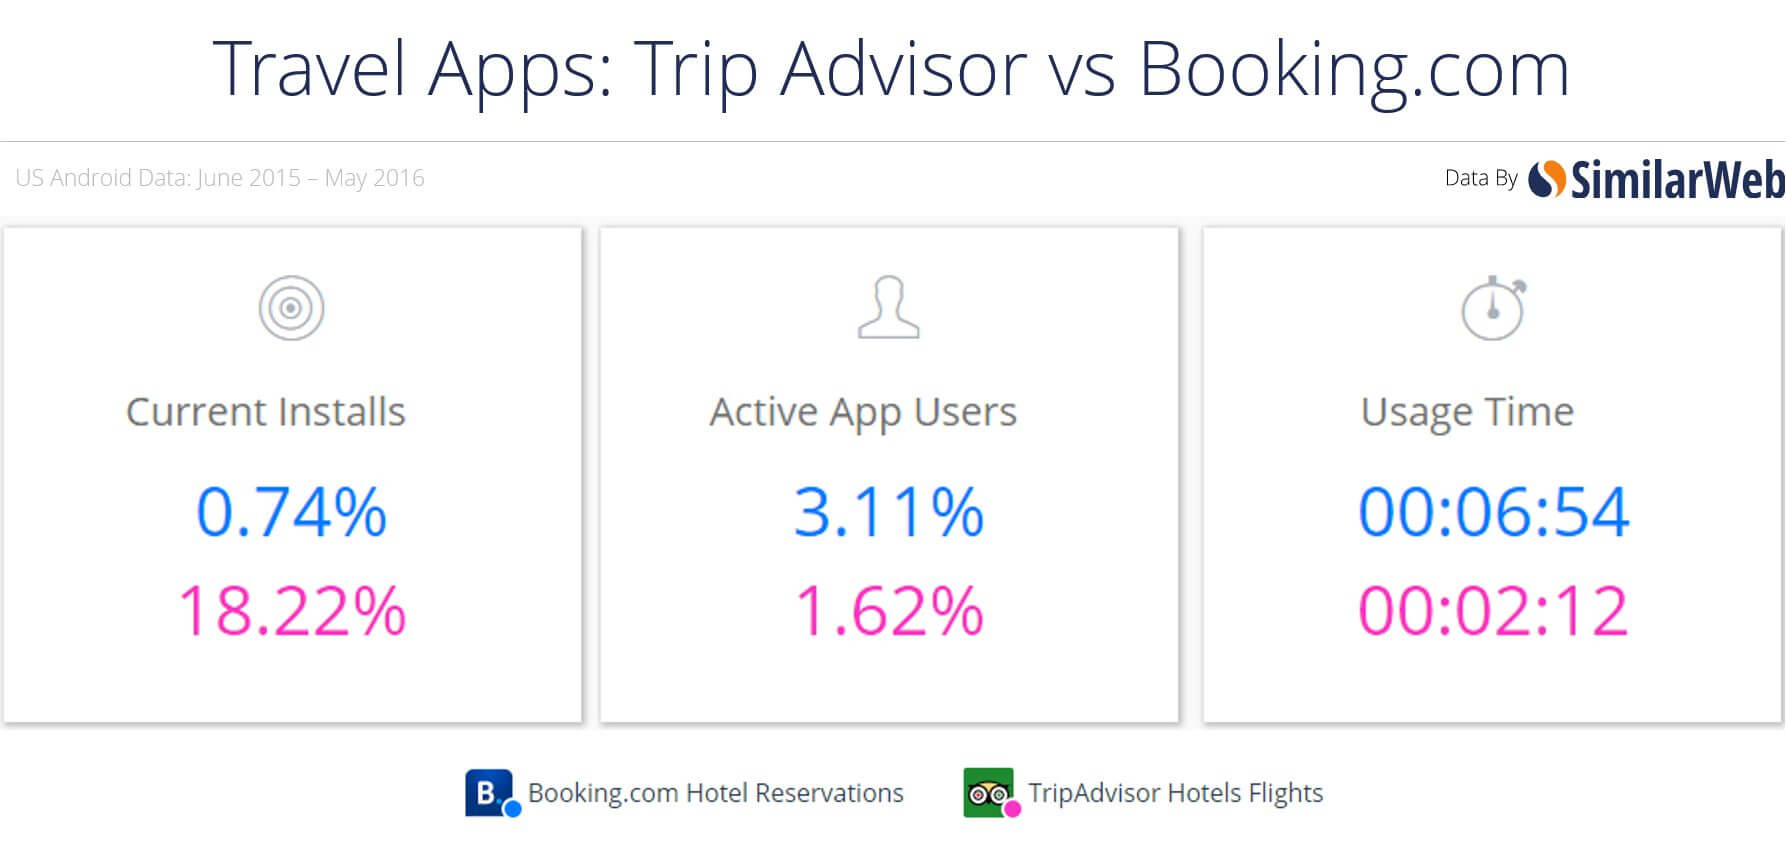 Trip Advisor vs. Booking.com